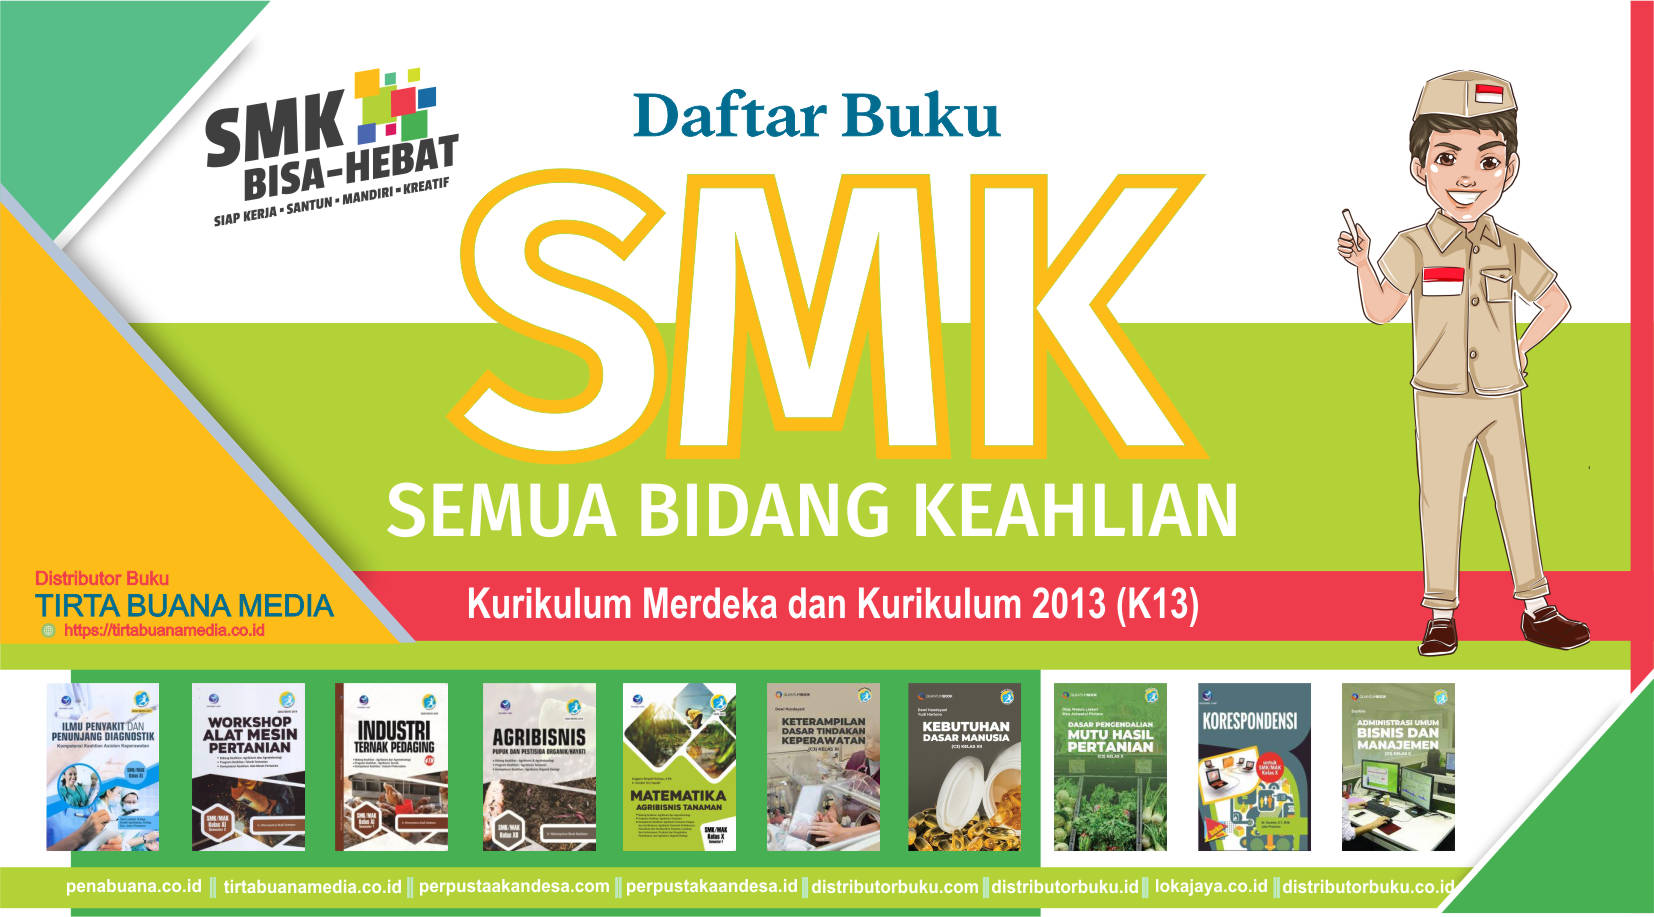 Daftar Buku SMK Semua Bidang Keahlian Kurikulum Merdeka dan KURIKULUM 2013